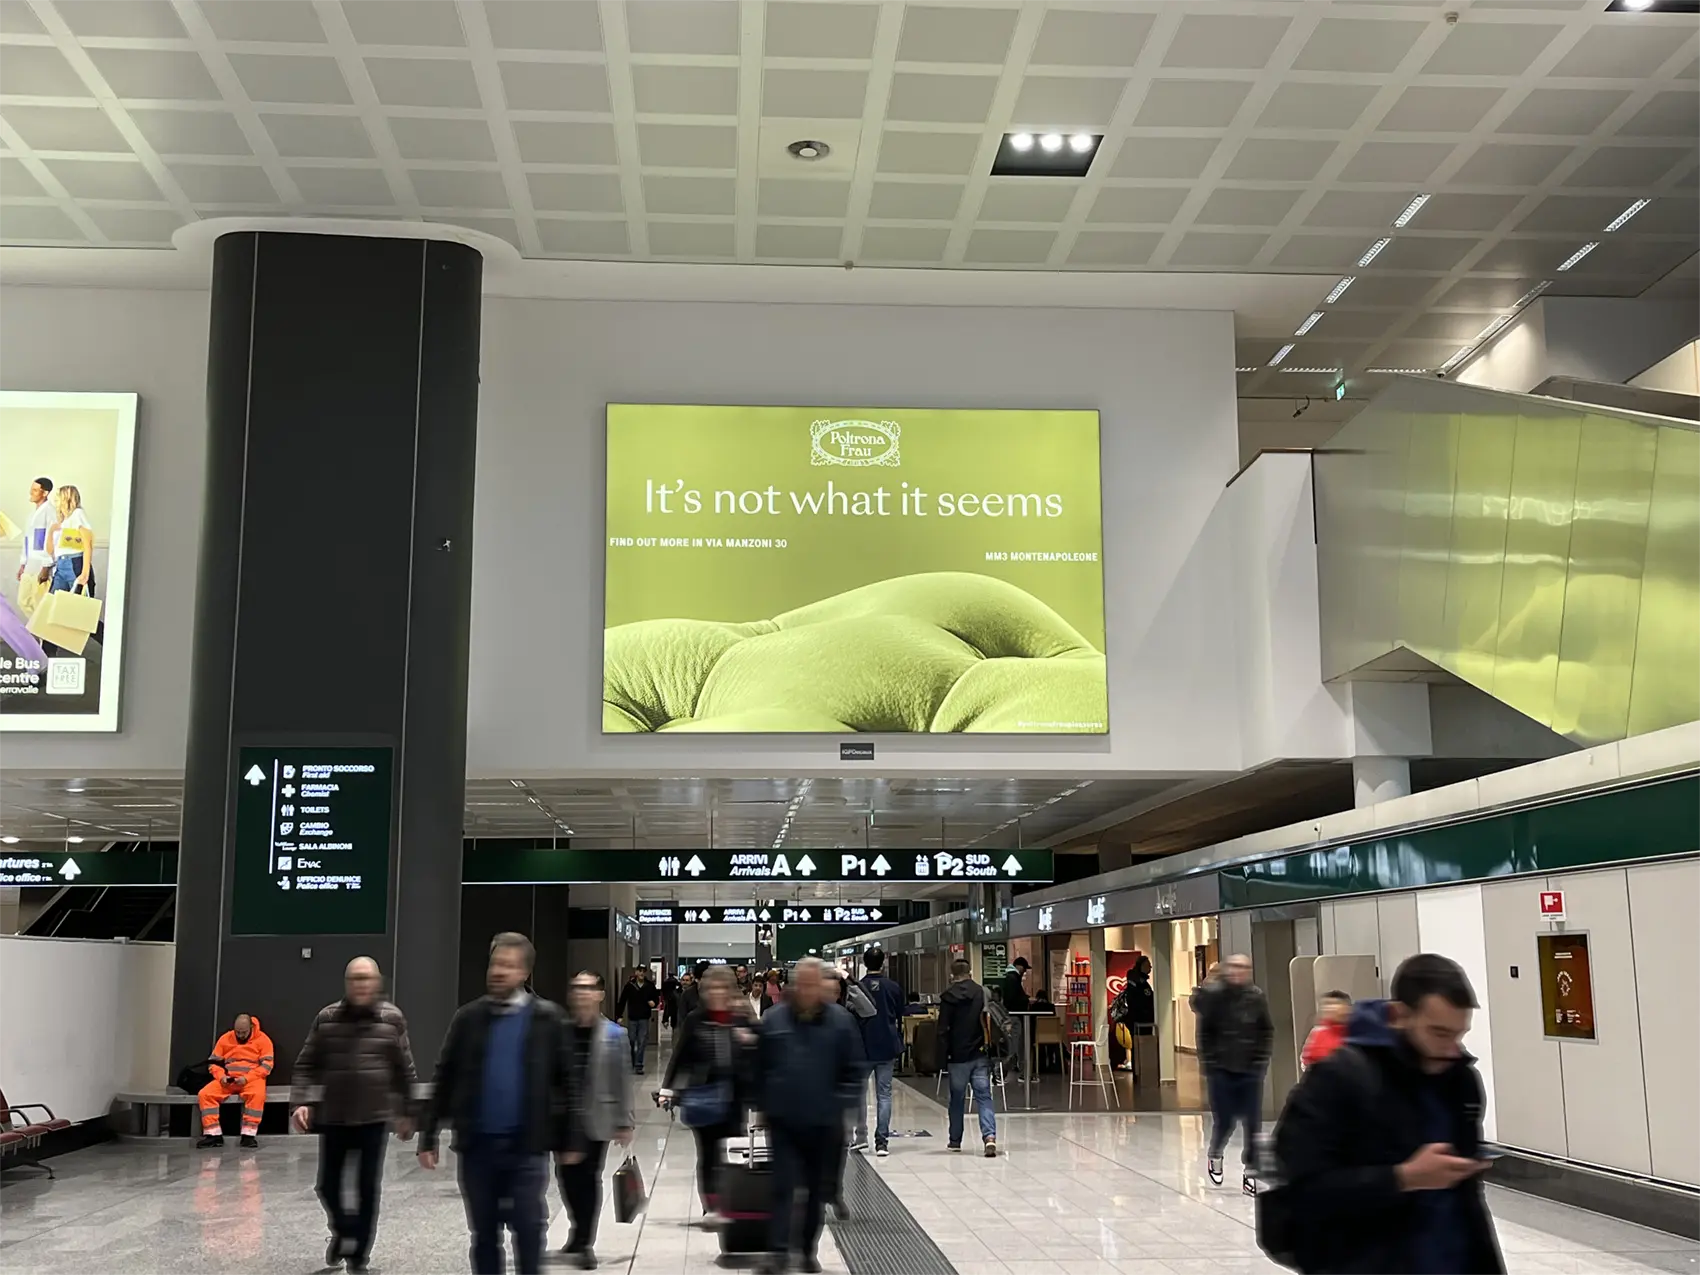 空港の"Poltrona Frau"(ポルトローナフラウ)の巨大広告 photo by IL DESIGN